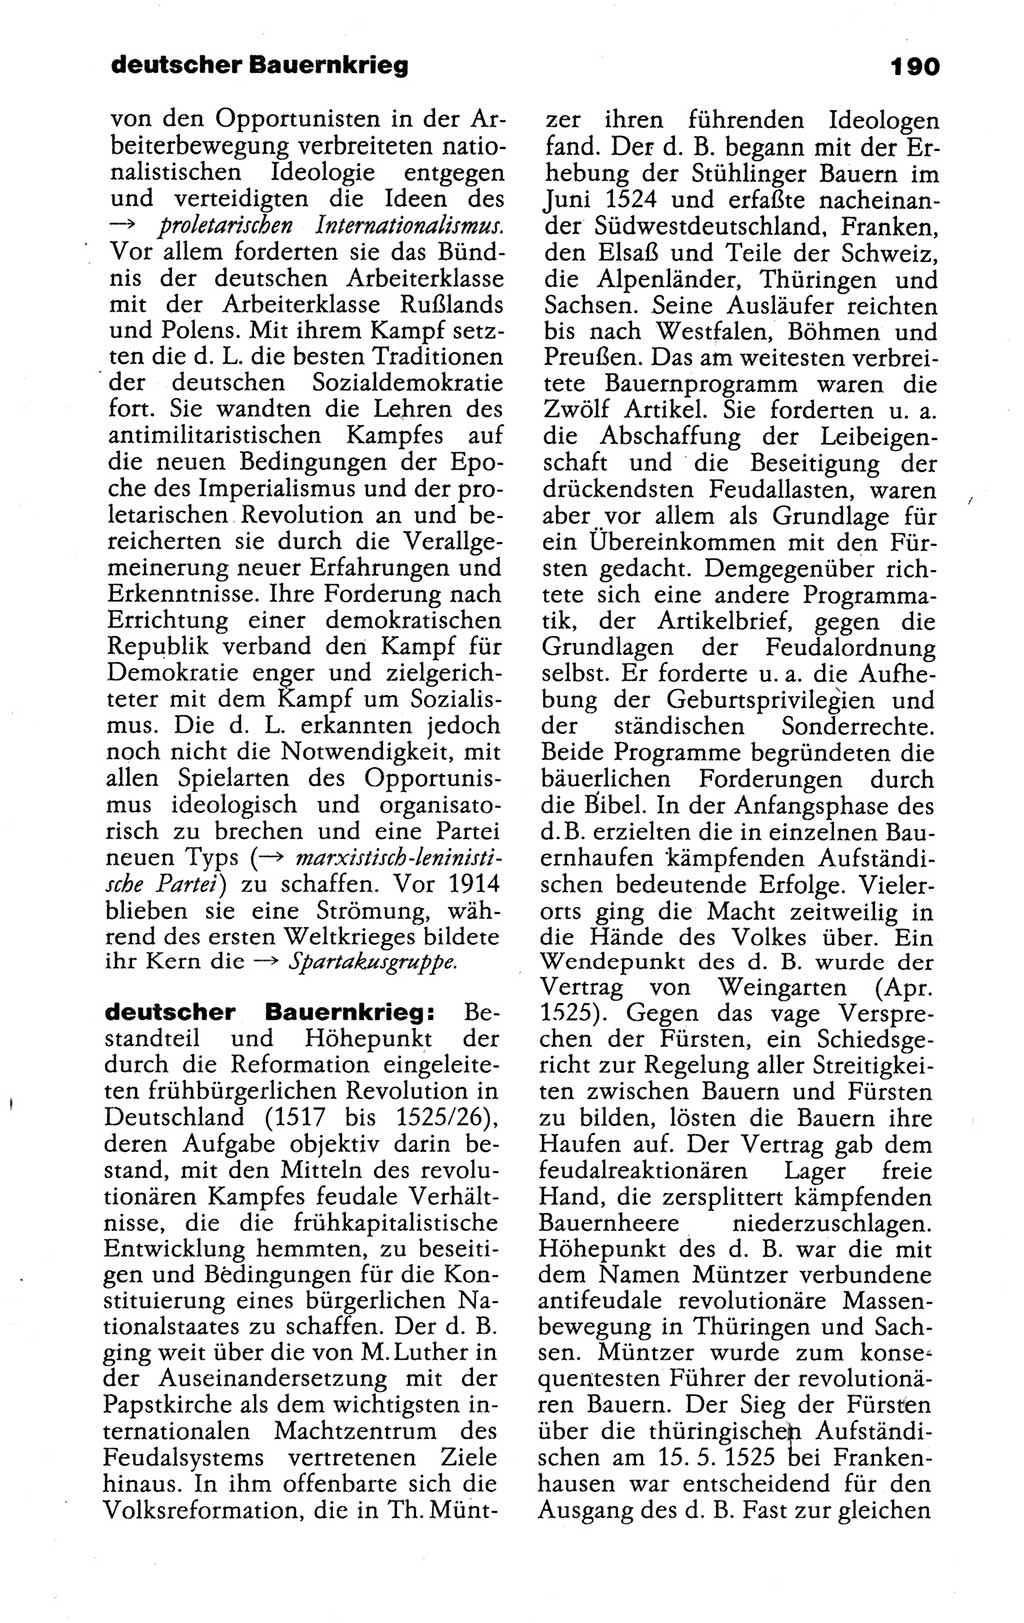 Kleines politisches Wörterbuch [Deutsche Demokratische Republik (DDR)] 1988, Seite 190 (Kl. pol. Wb. DDR 1988, S. 190)